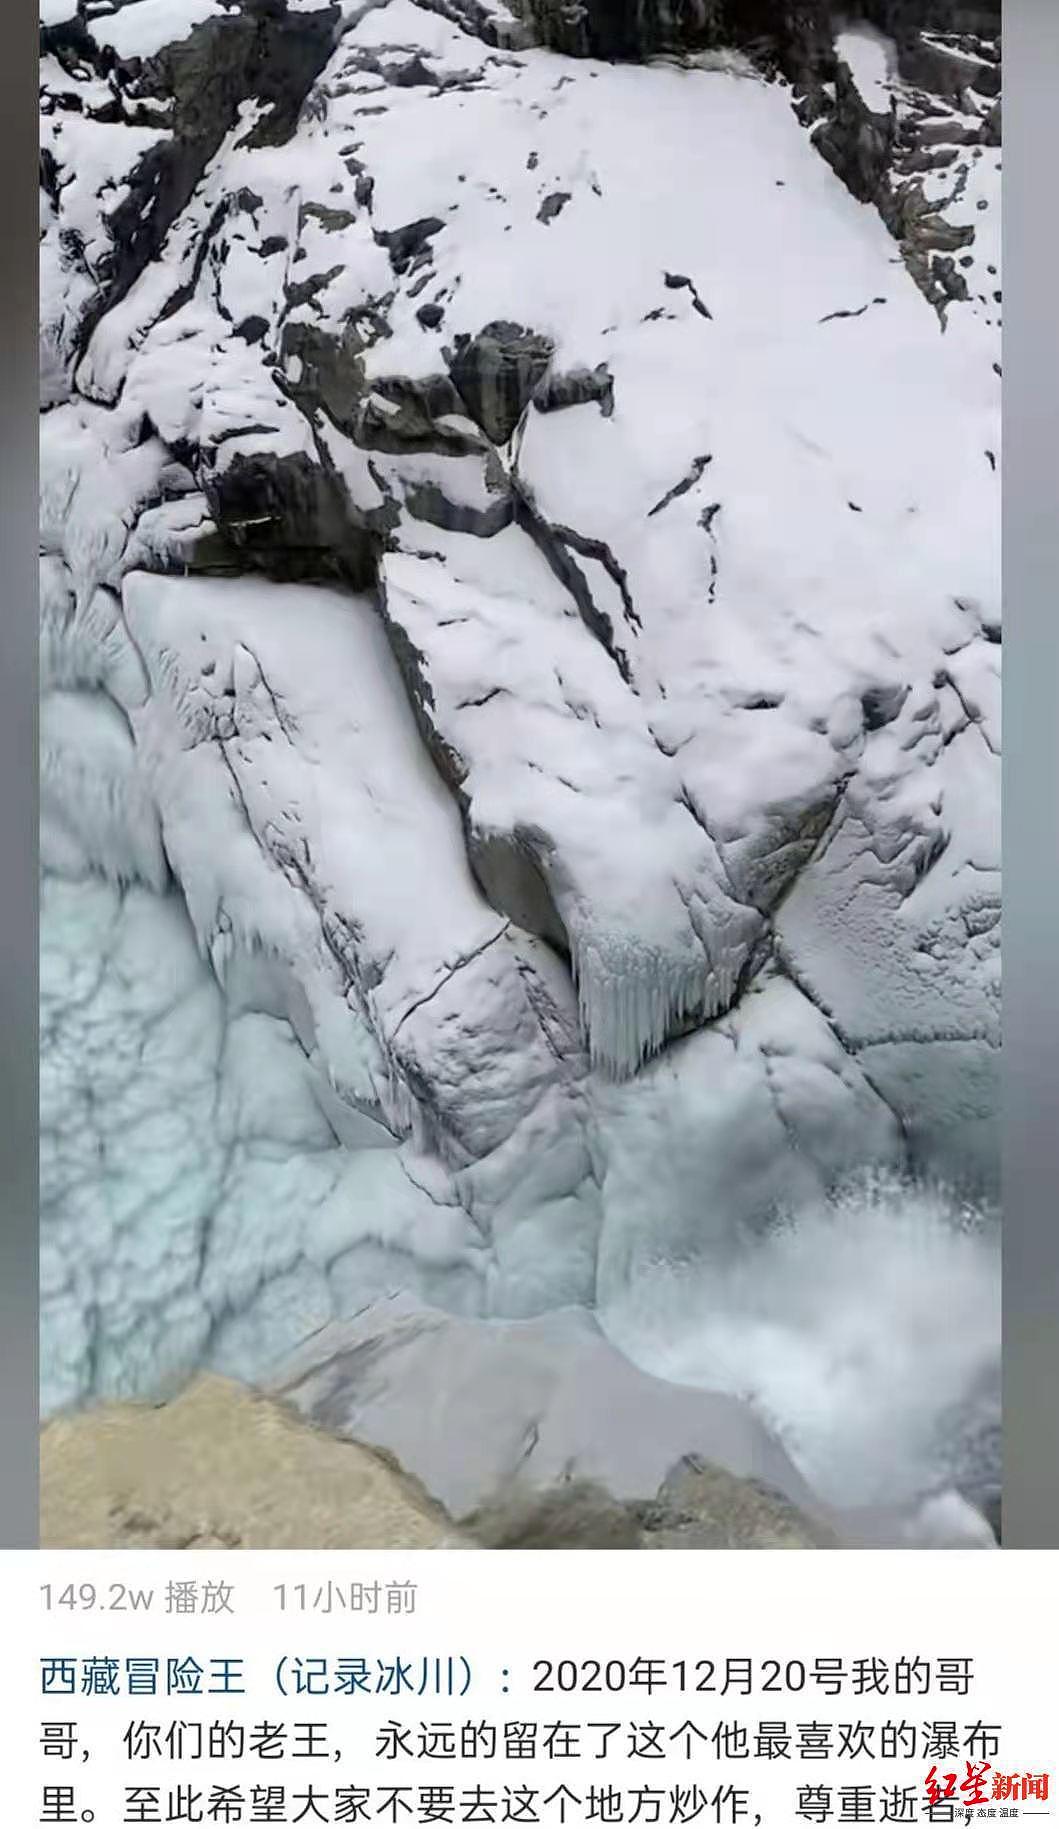 之前，王龙登录哥哥短视频账号发布哥哥遇难的消息，视频画面正是哥哥出事的地点：依噶冰川瀑布